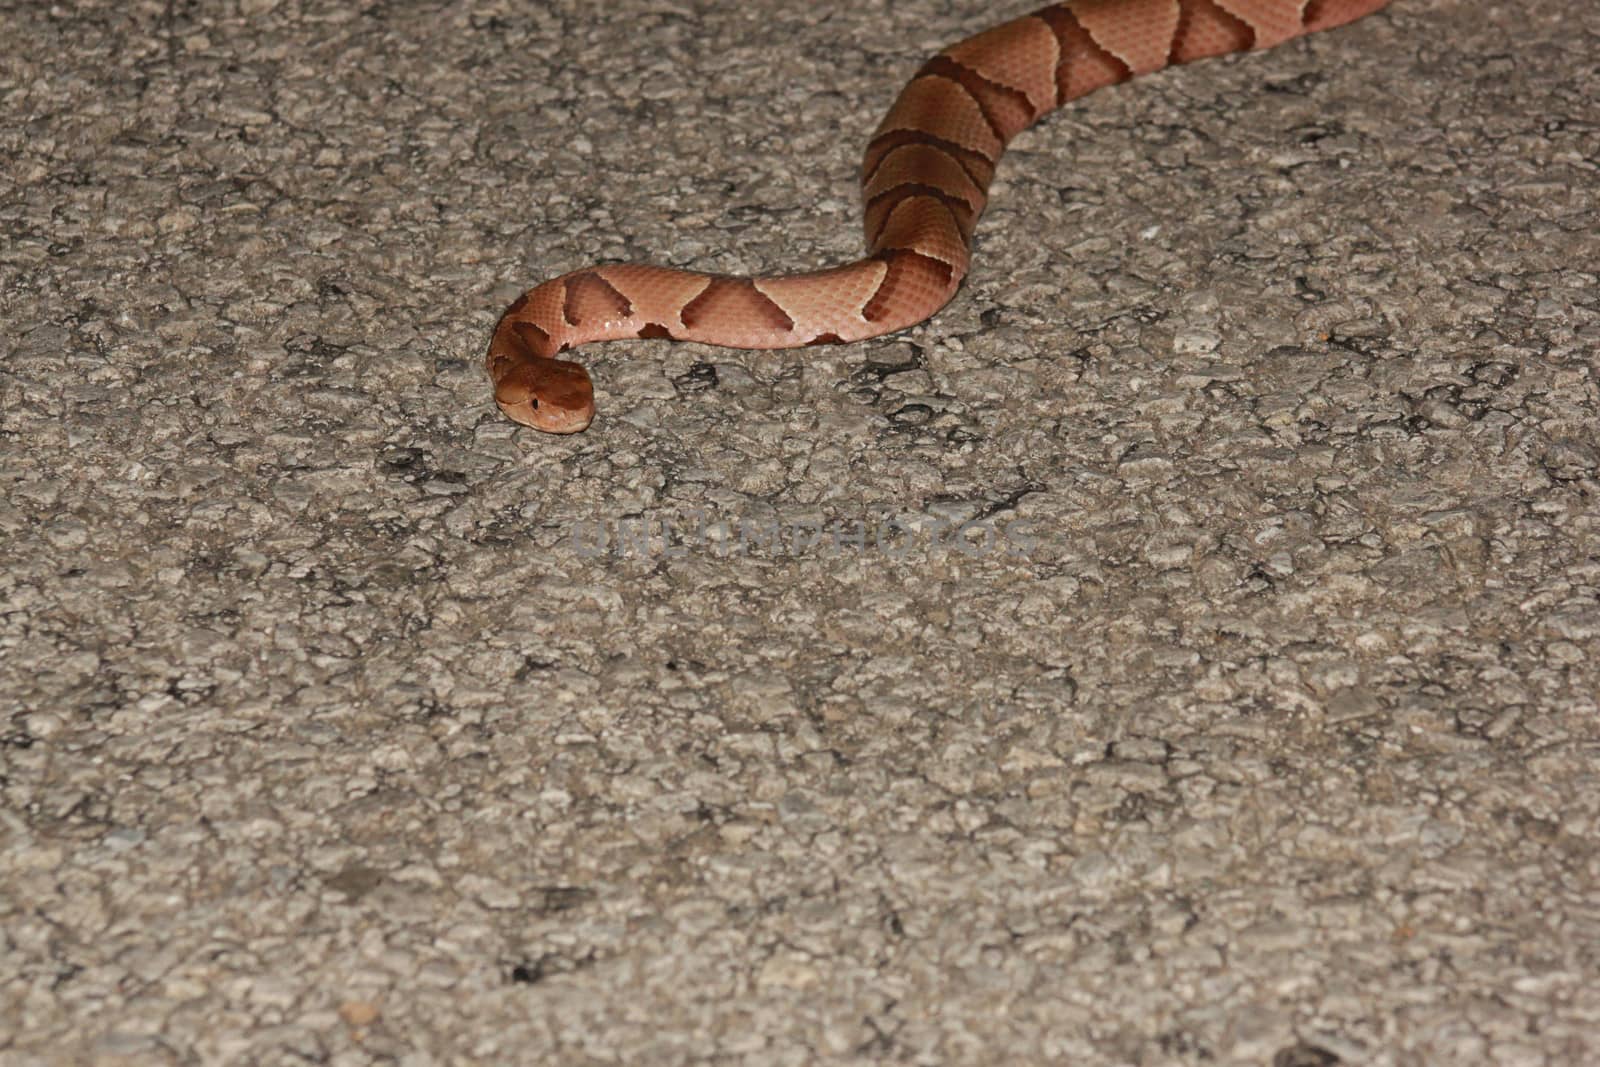 Copperhead Snake by tornado98